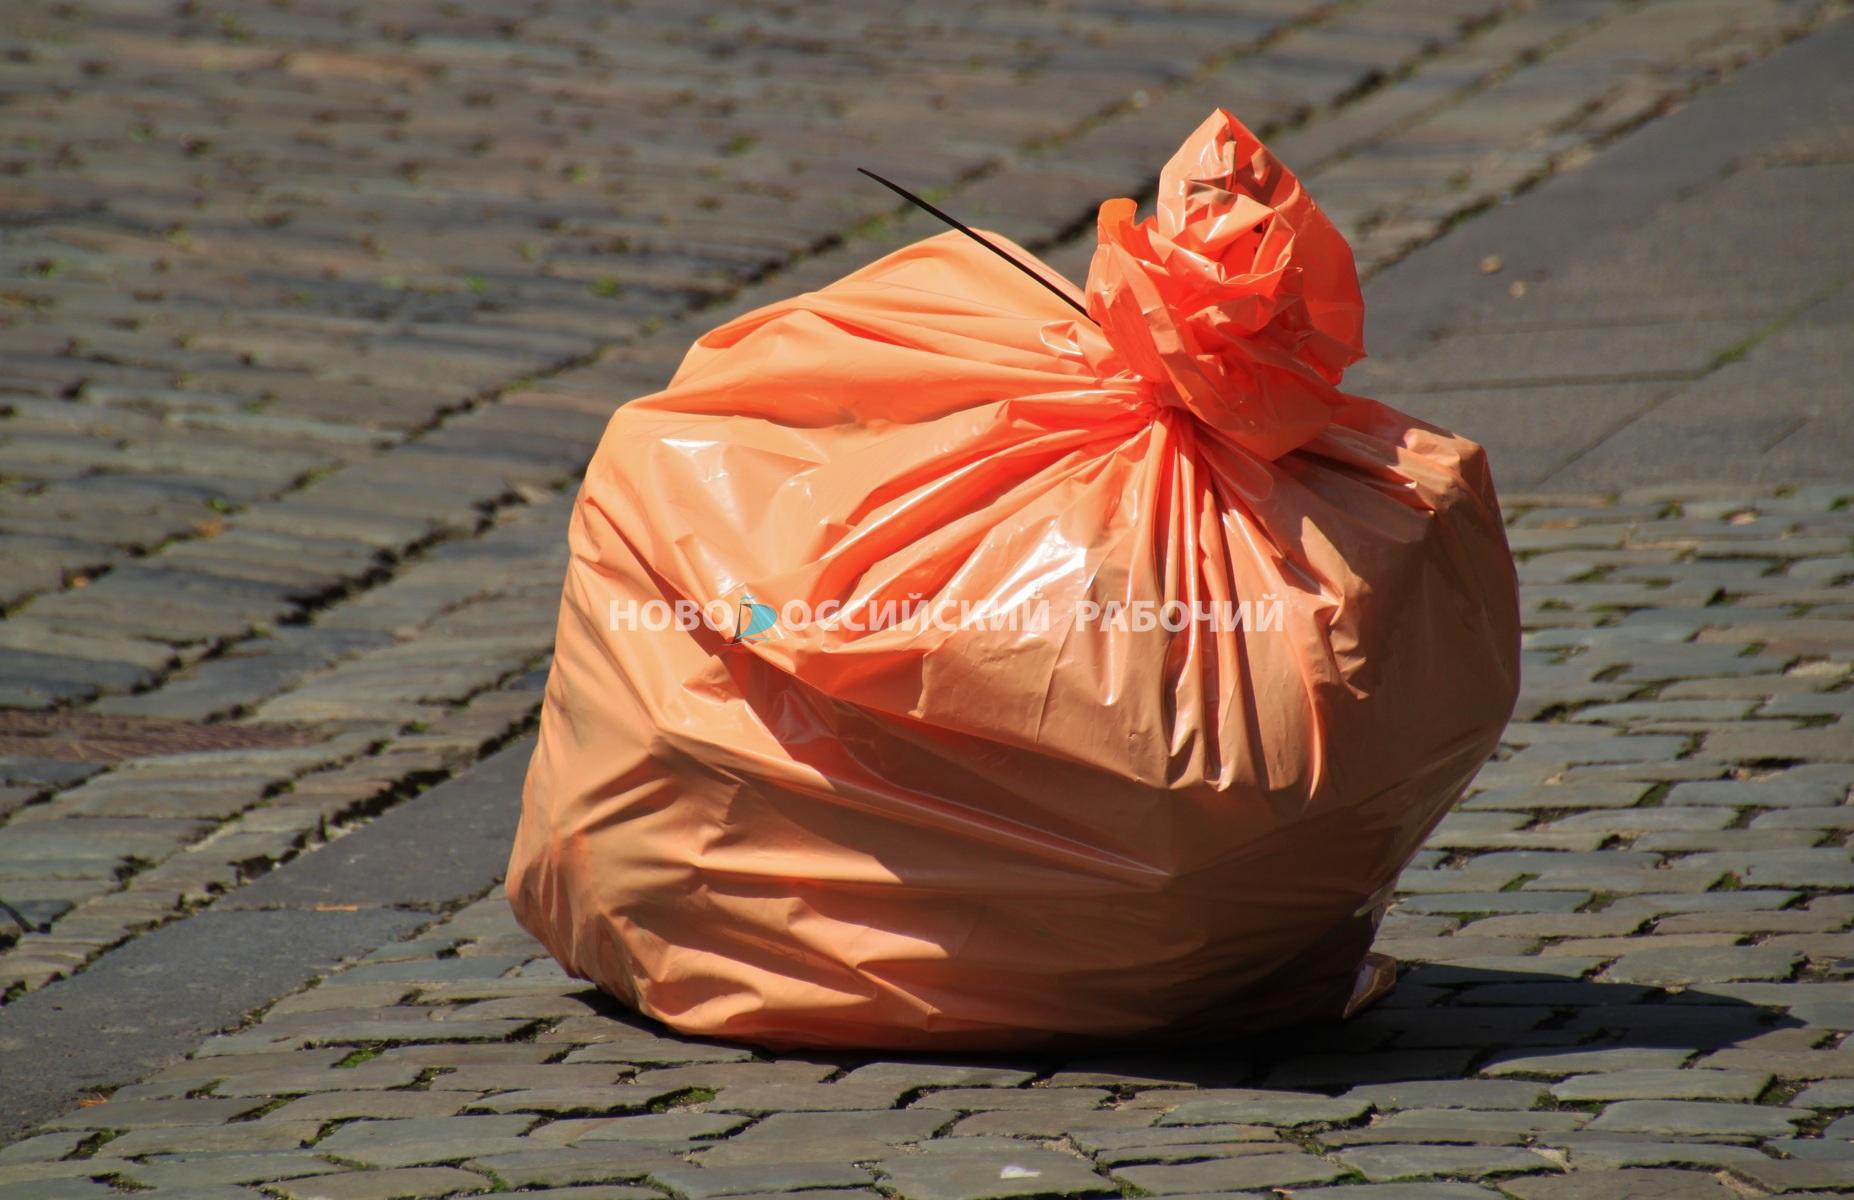 Под Новороссийском нашли хозяина мусора в реке и бросили пакет ему во двор